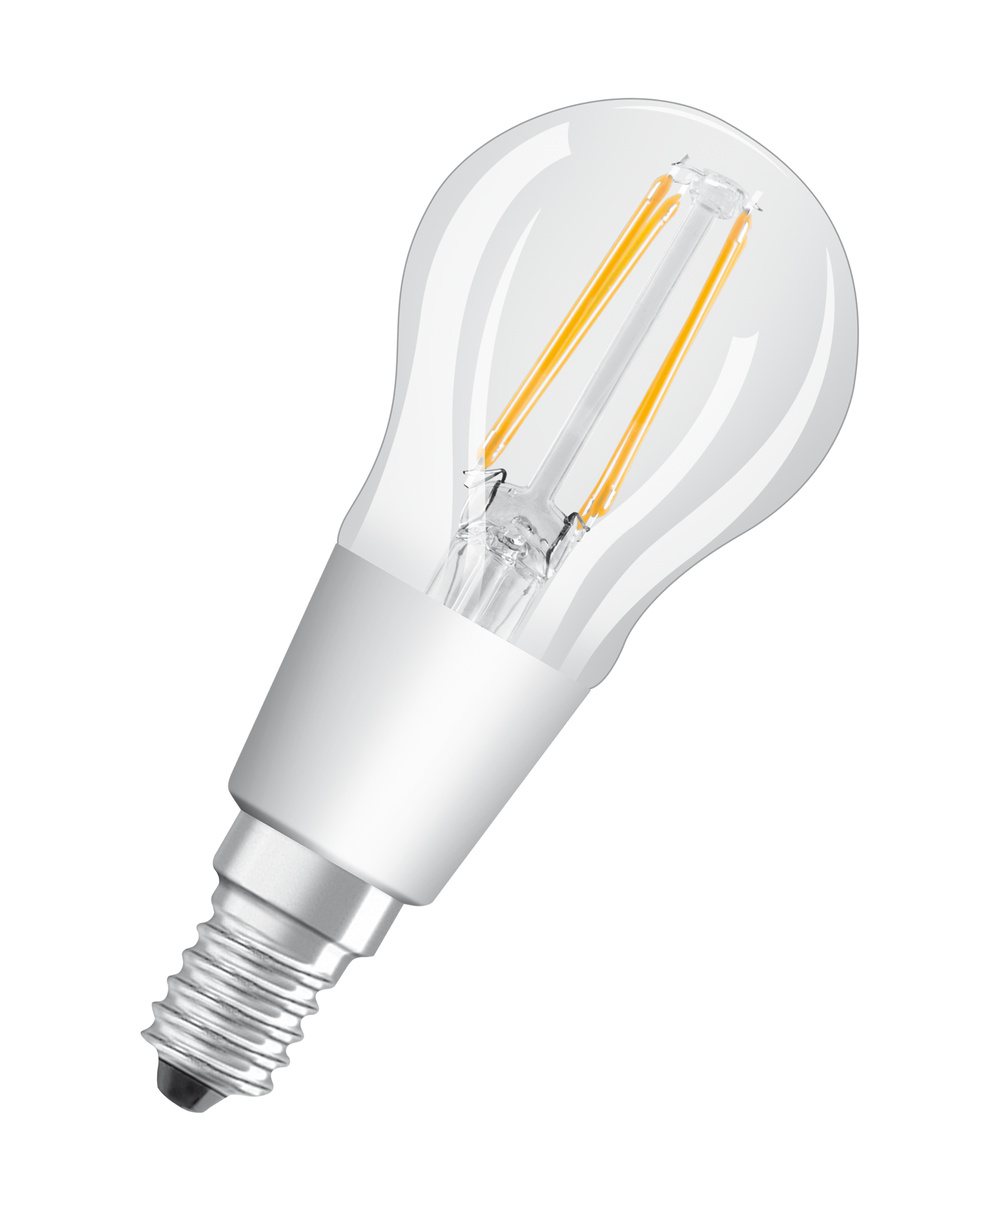 Ledvance LED lamp LED SUPERSTAR CLASSIC P GLOWdim 40  4 W/2200...2700 K E14  - 4058075435476